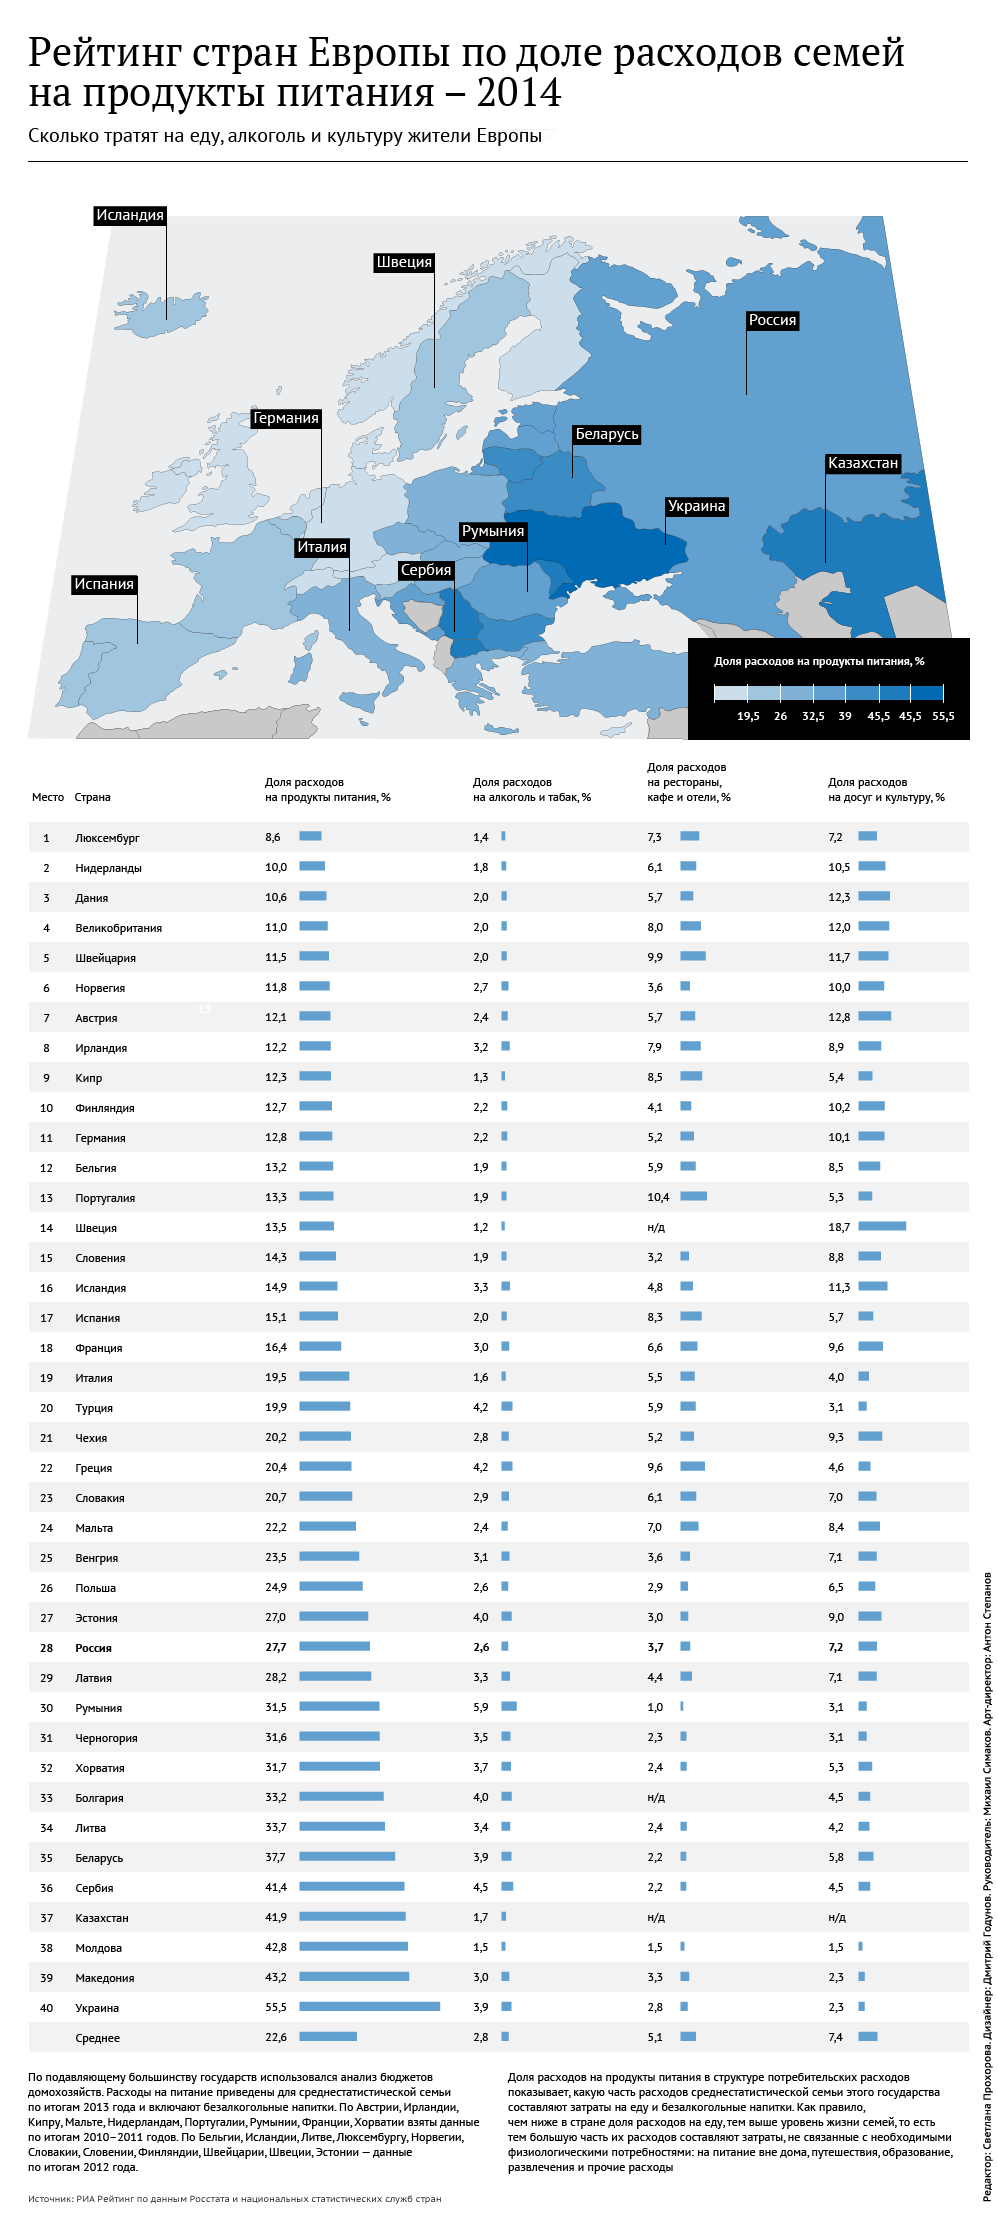 Рейтинг стран Европы по доле расходов семей на продукты питания - 2014